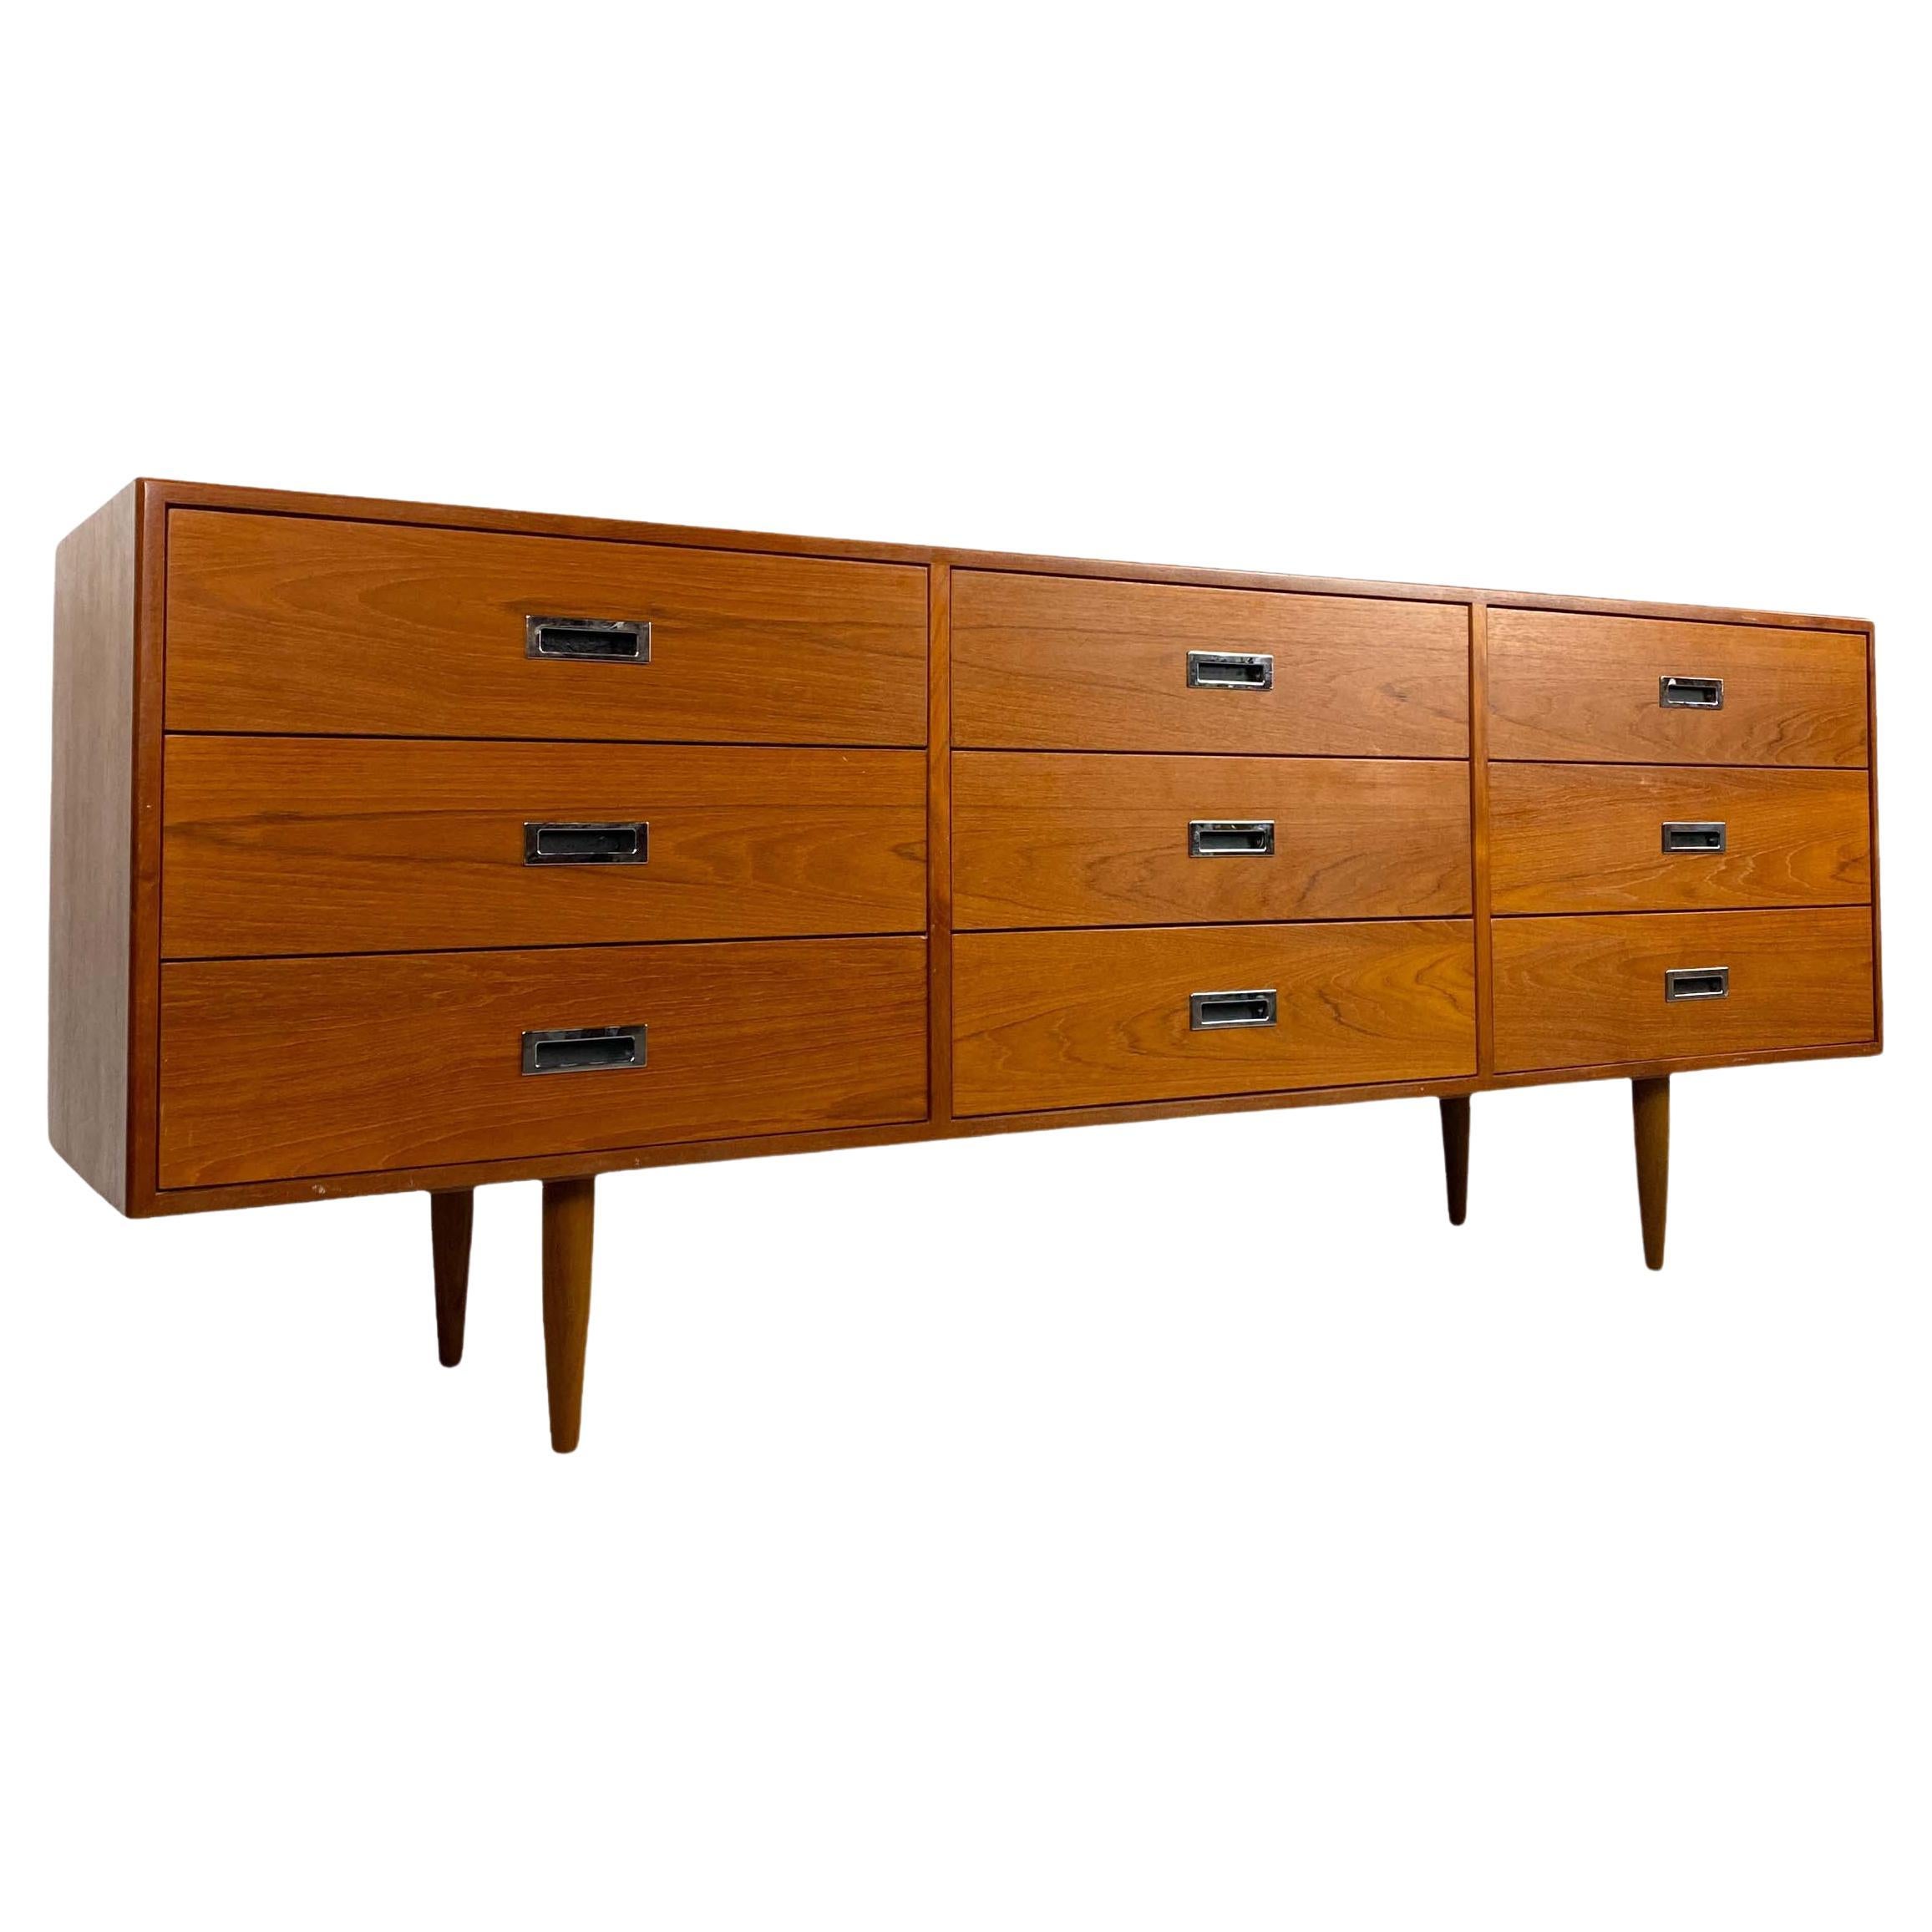 Vintage Teak 9-Drawer Dresser